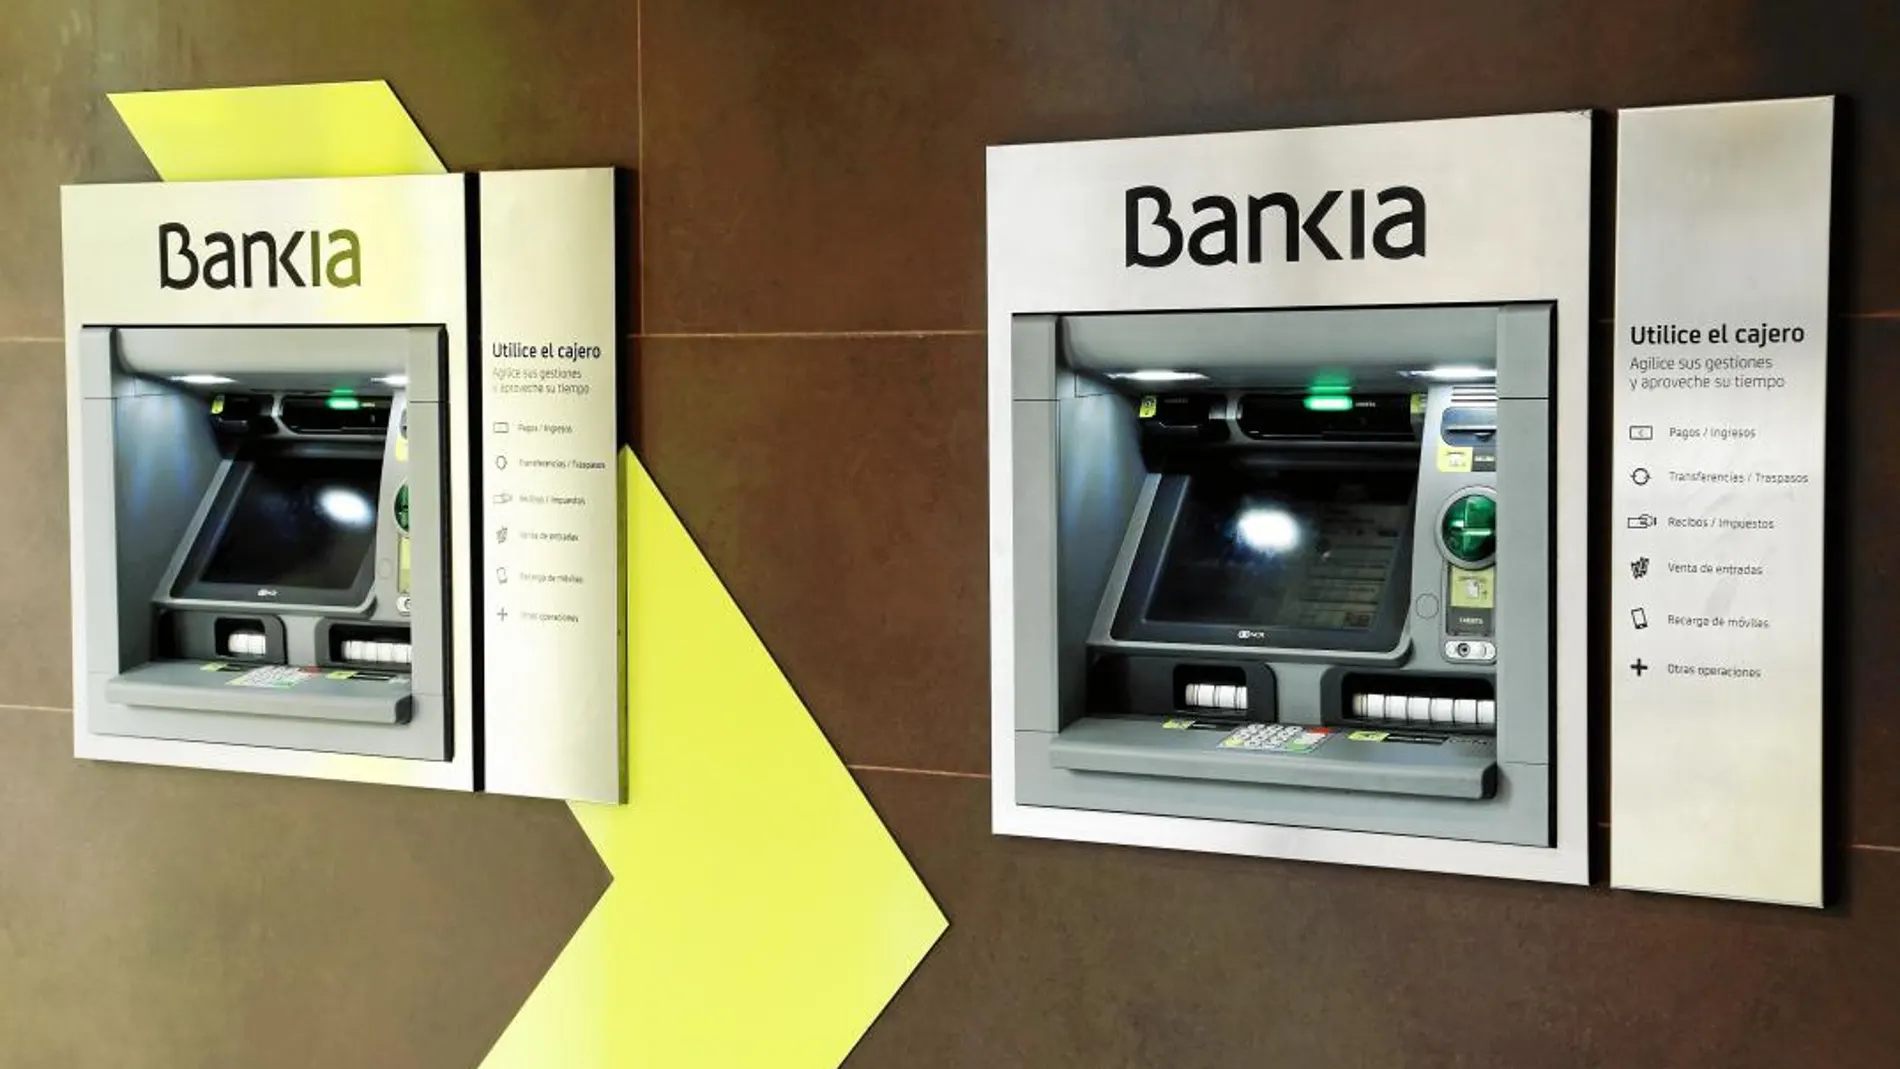 Bankia se ha marcado el objetivo de lograr en 2020 un índice de satisfacción de clientes del 92%. «Queremos ser una entidad que sabe escuchar al cliente e identificar sus necesidades», explica su su director Corporativo de Marketing, Juan Carlos Reyes